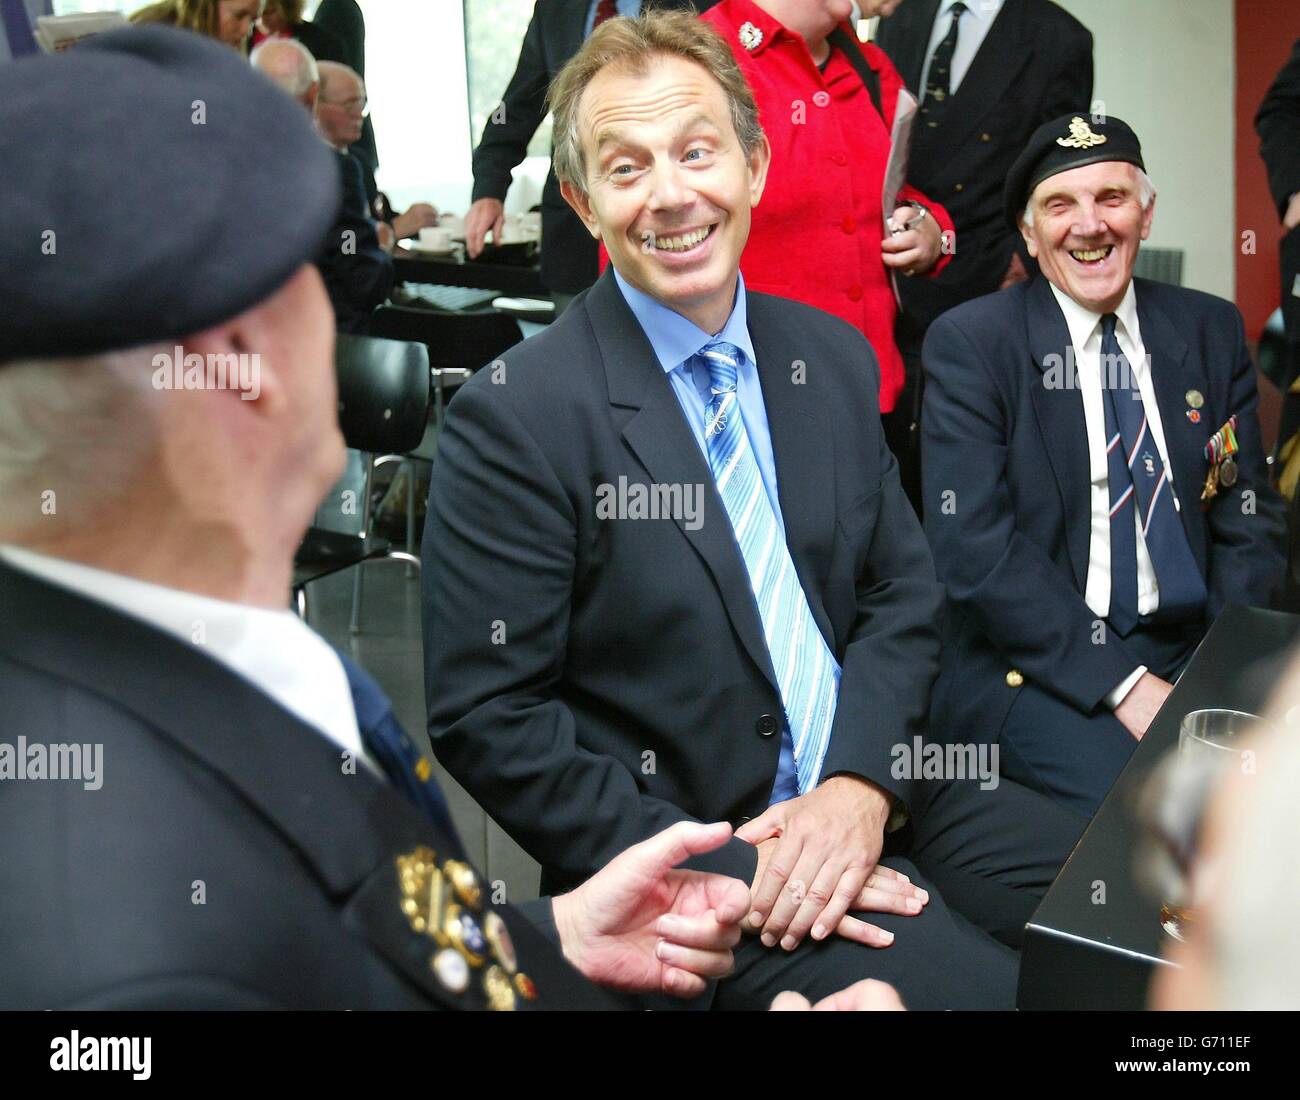 Der britische Premierminister Tony Blair trifft die D-Day-Veteranen Jim Baker DSM (links) und Stan Dickinson im Imperial war Museum North in Salford, Greater Manchester. Blair sagte, der Besuch des Museums, das ein Veranstaltungsprogramm zum Gedenken an den 60. Jahrestag der Landung des D-Day in der Normandie gestartet hat, habe ihn emotional und „inspiriert“ gemacht. Stockfoto